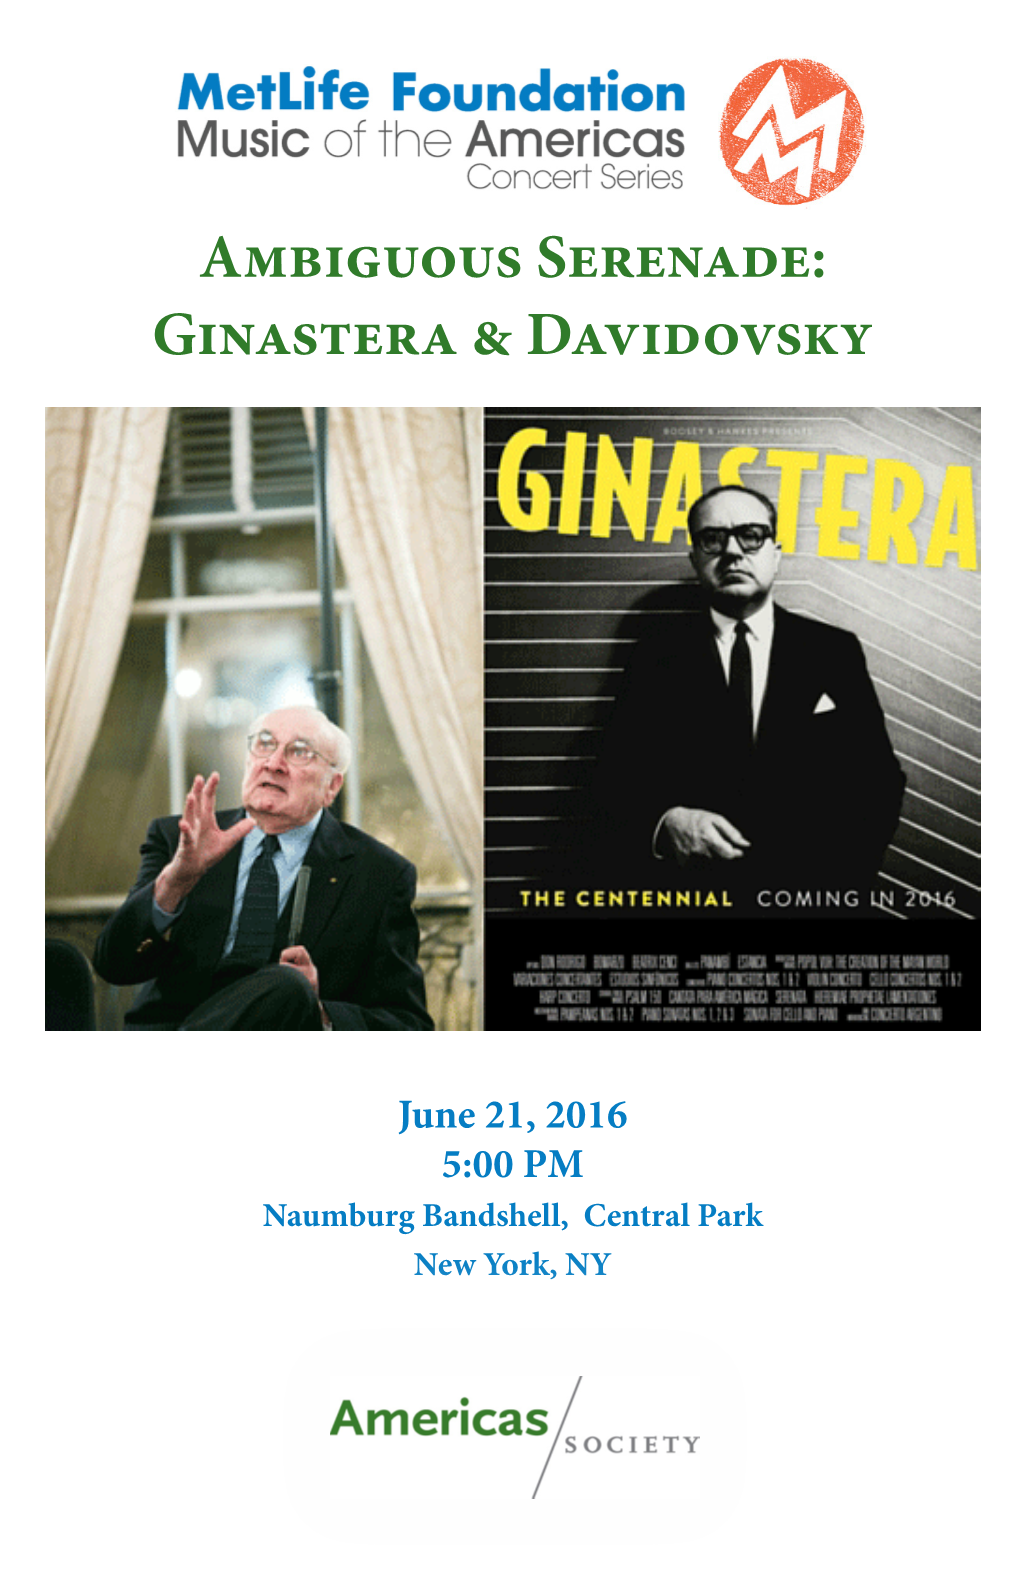 Ambiguous Serenade: Ginastera & Davidovsky